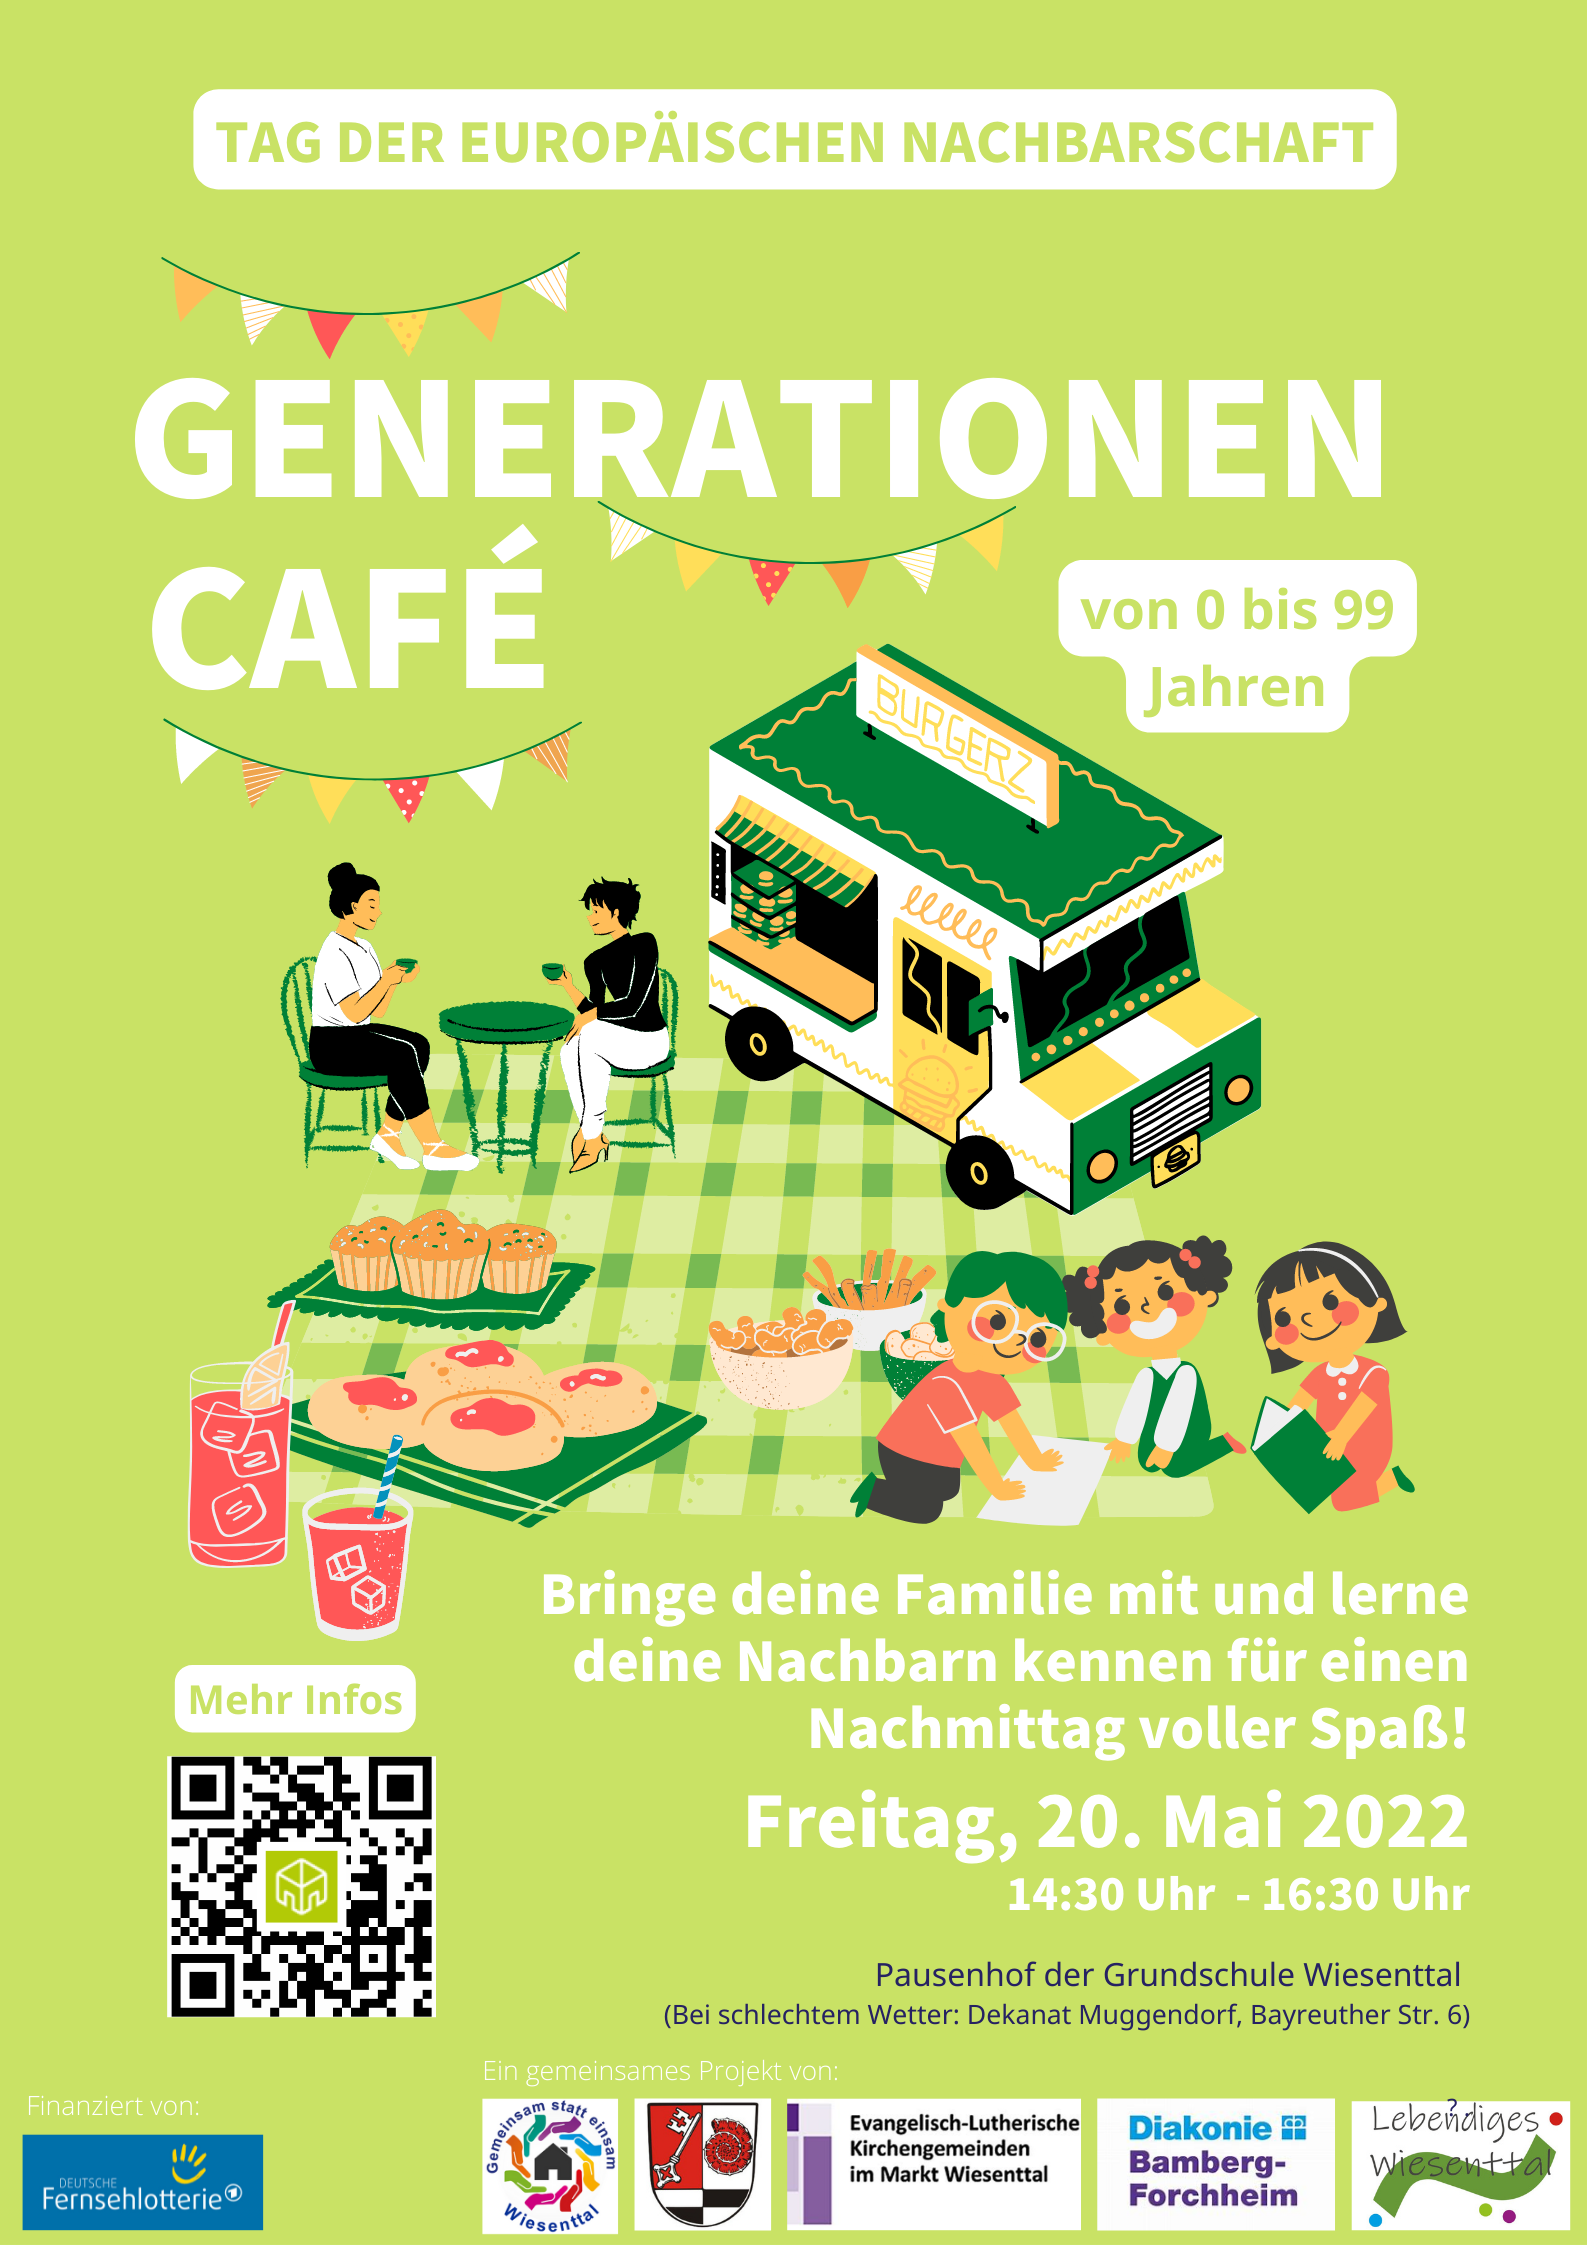 Generationencafé zur europäischen Nachbarschaft